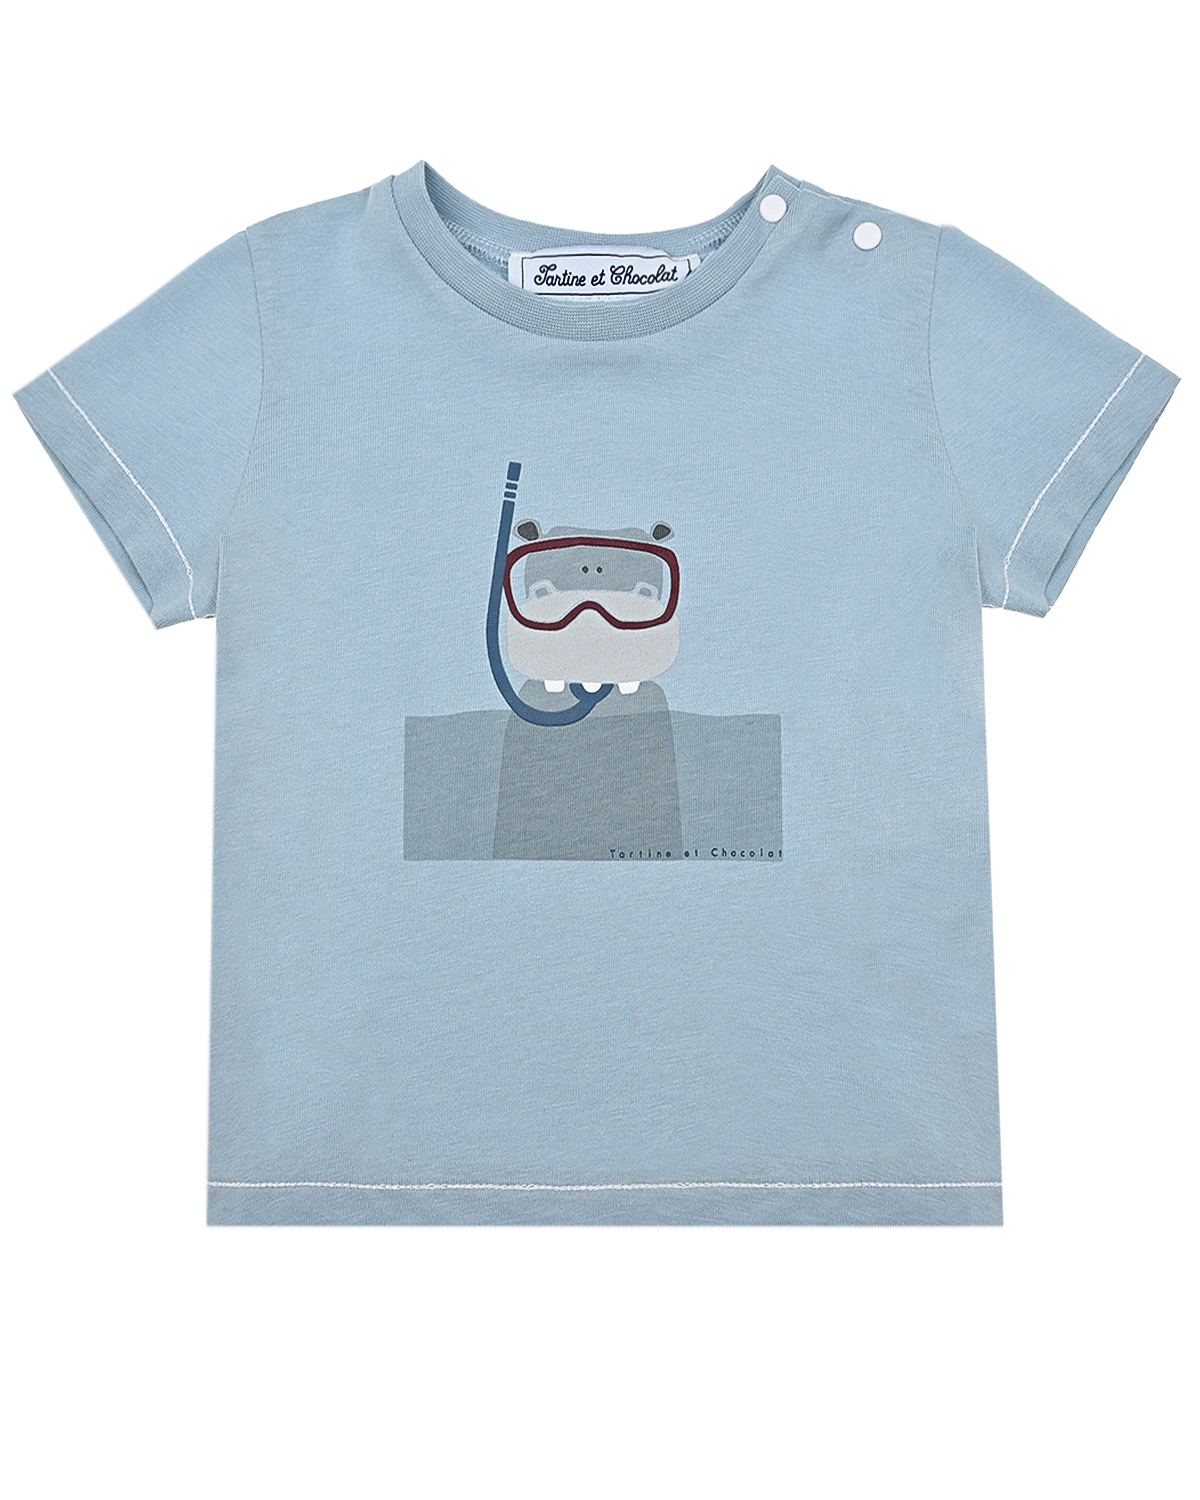 Голубая футболка с принтом "водолаз" Tartine et Chocolat детская, размер 74, цвет голубой - фото 1